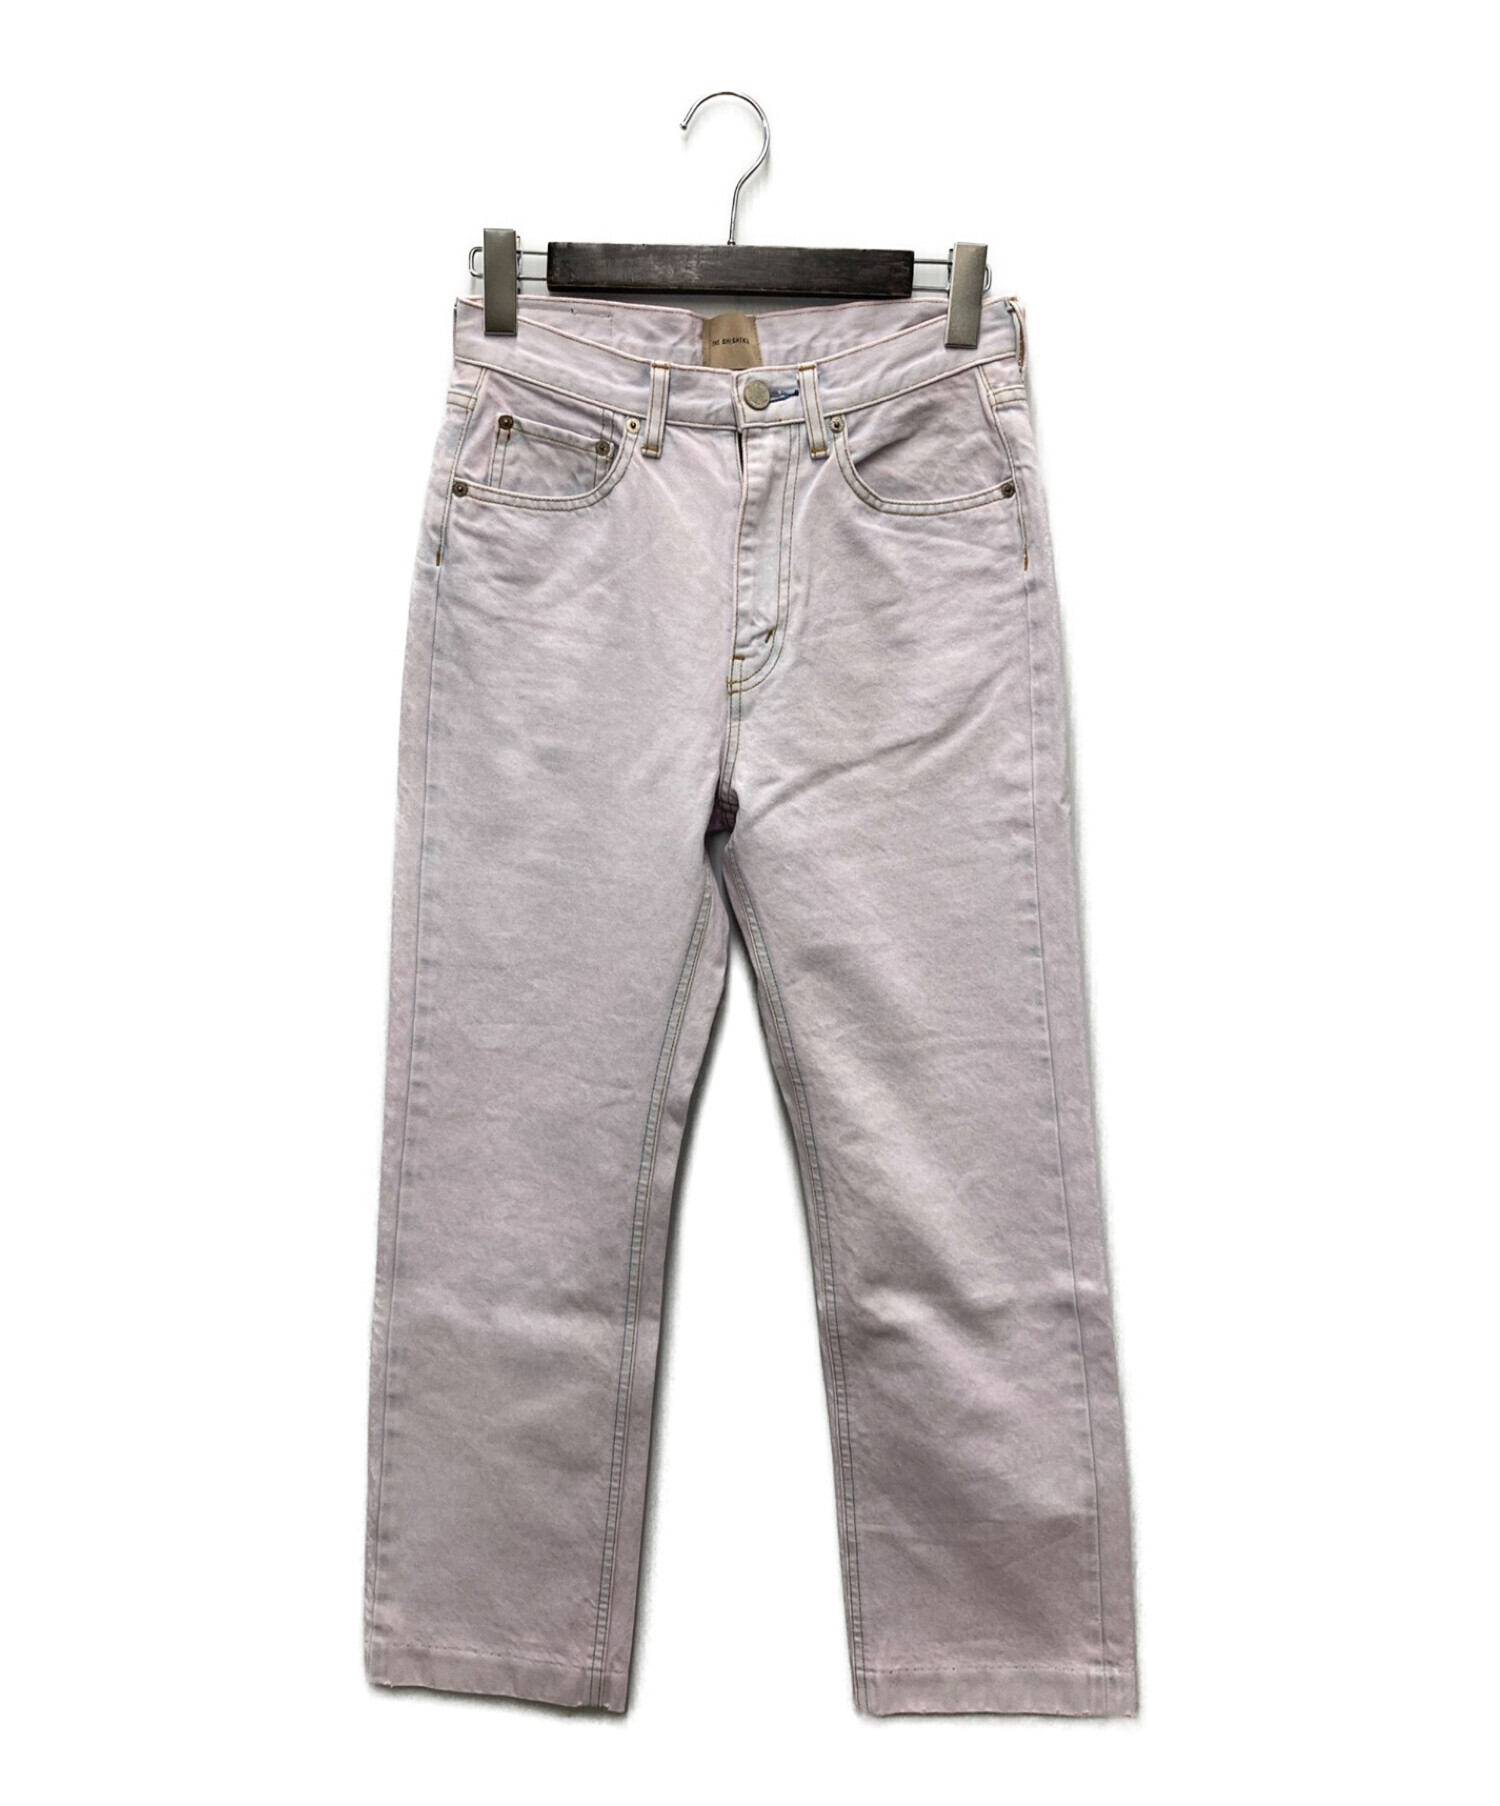 the shishikui basic jeans icepink size26